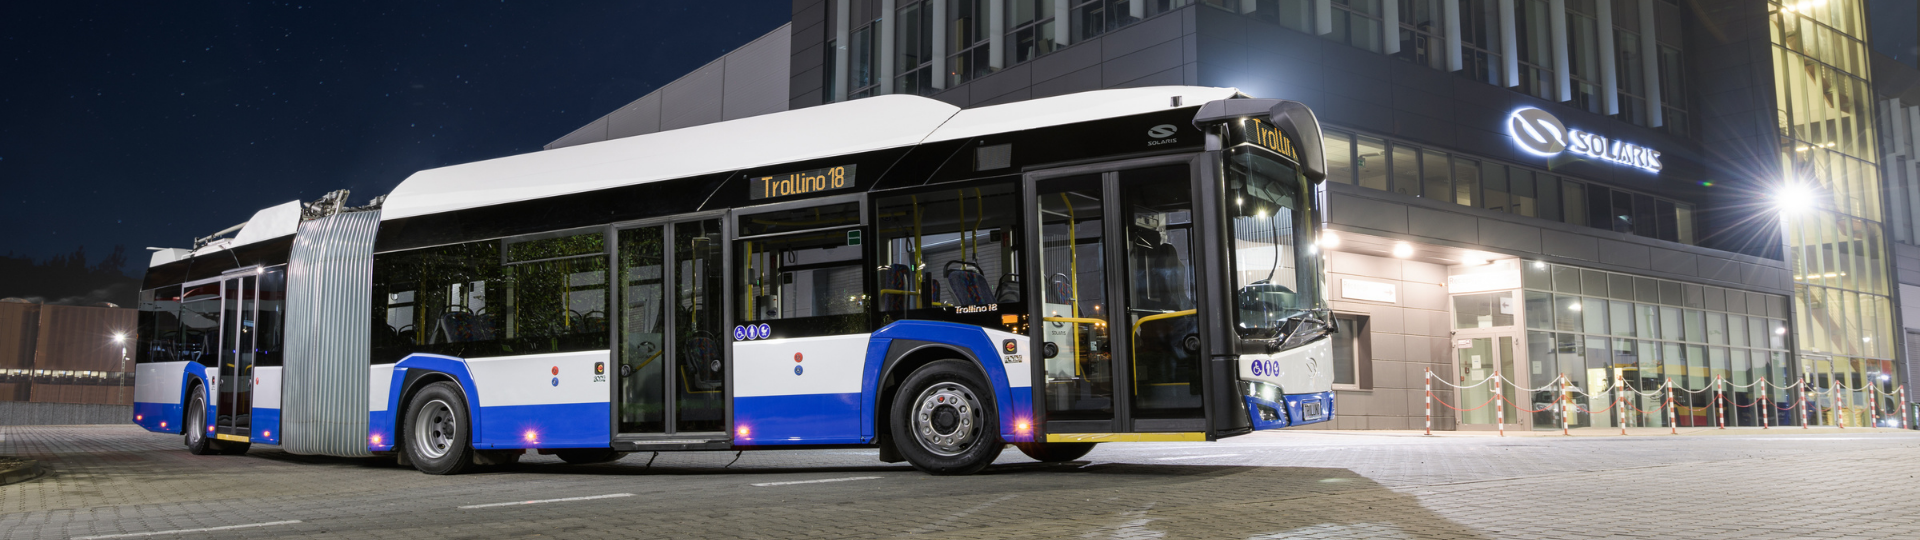 Solaris dostarczy kolejnych 48 trolejbusów do Budapesztu